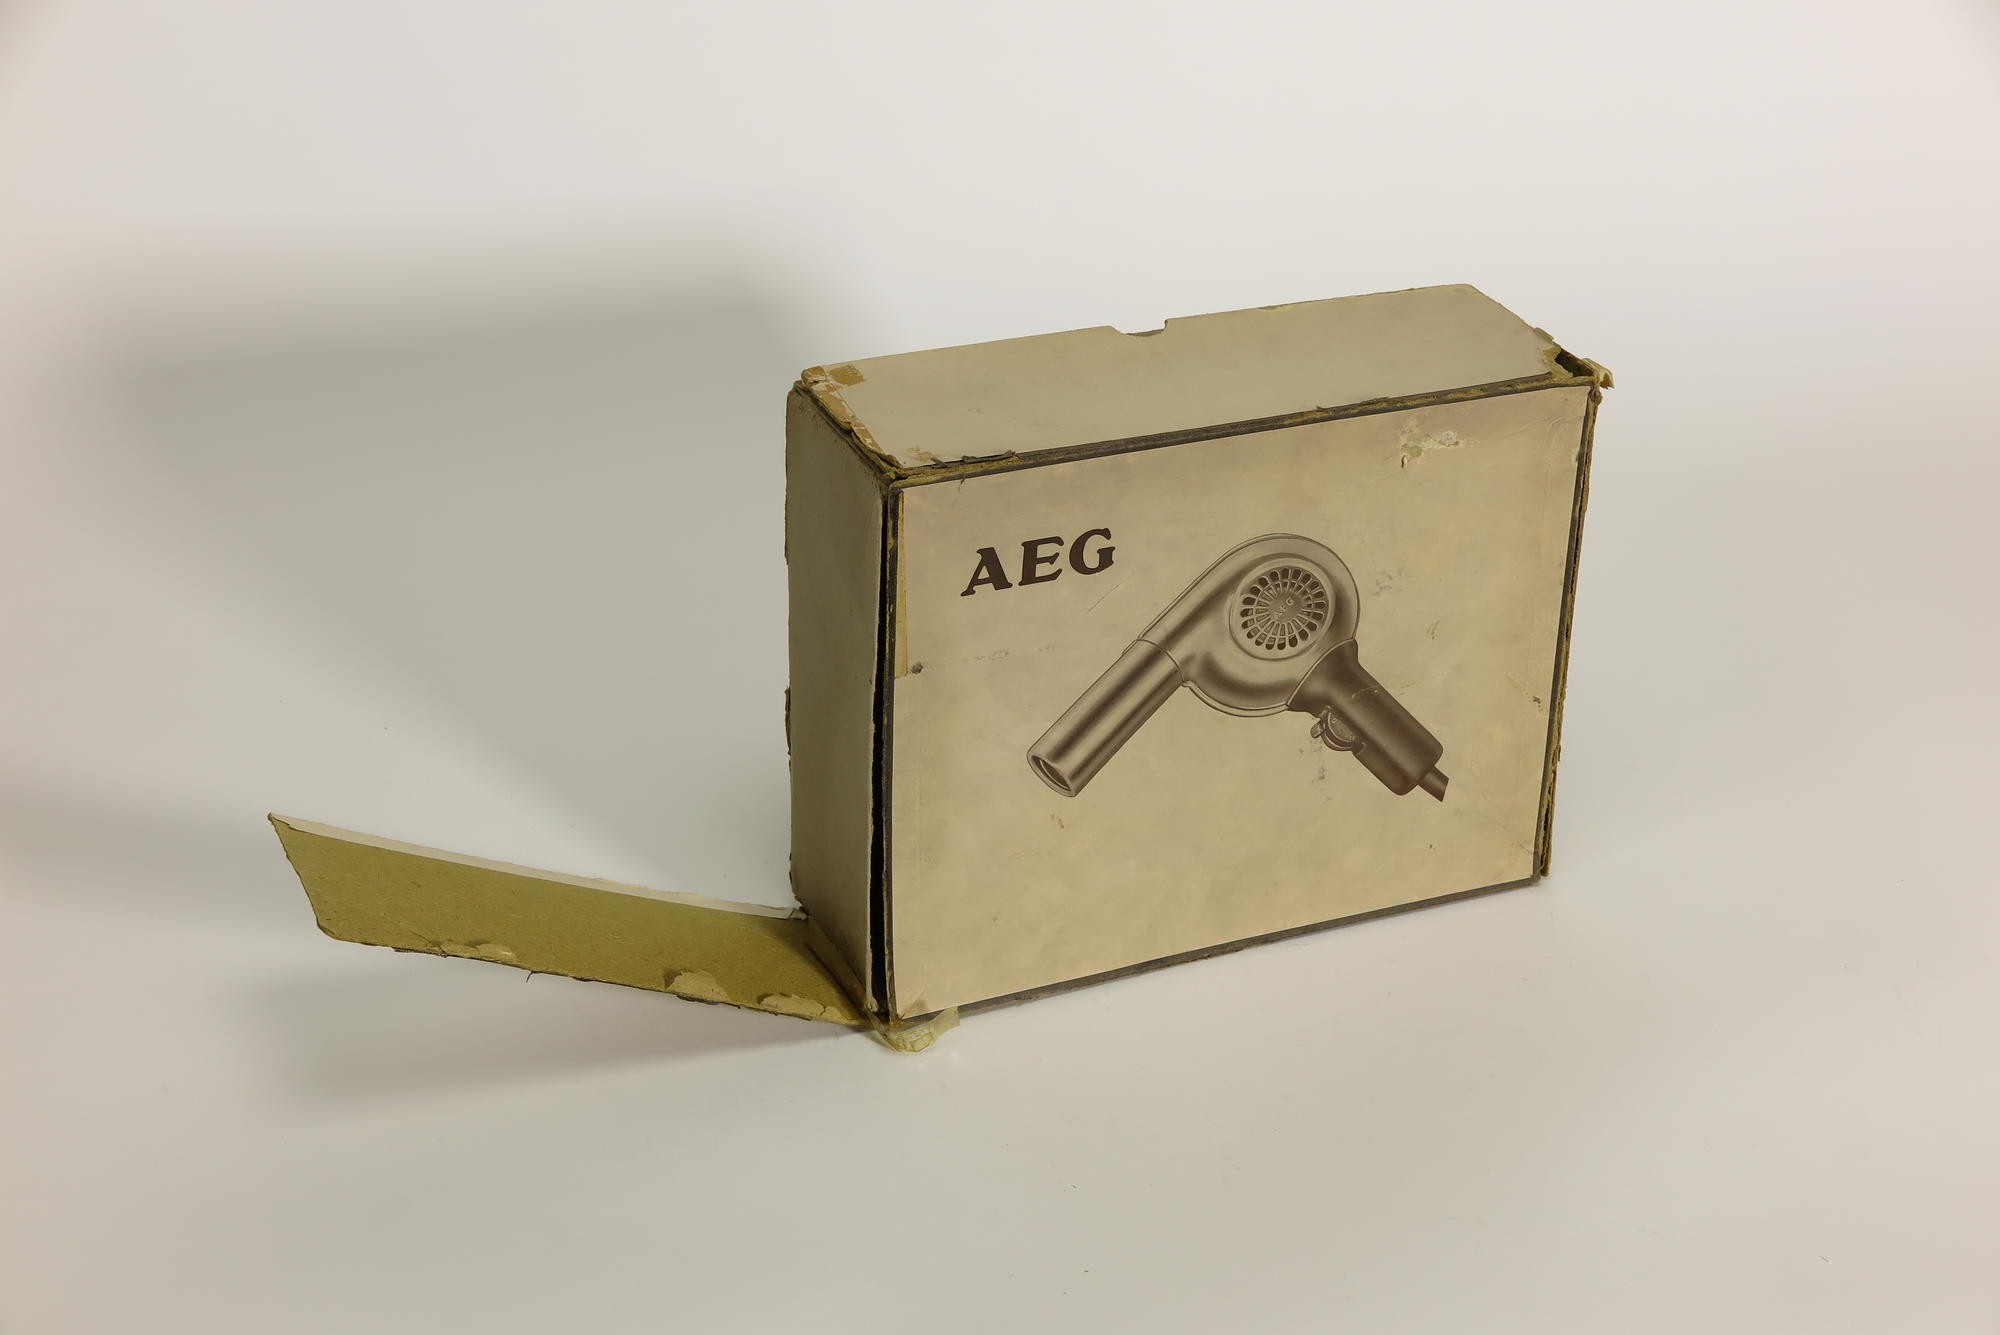 Verpackungskarton, Zubehör zu Elektrischer Haartrockner AEG (Stiftung Deutsches Technikmuseum Berlin CC0)